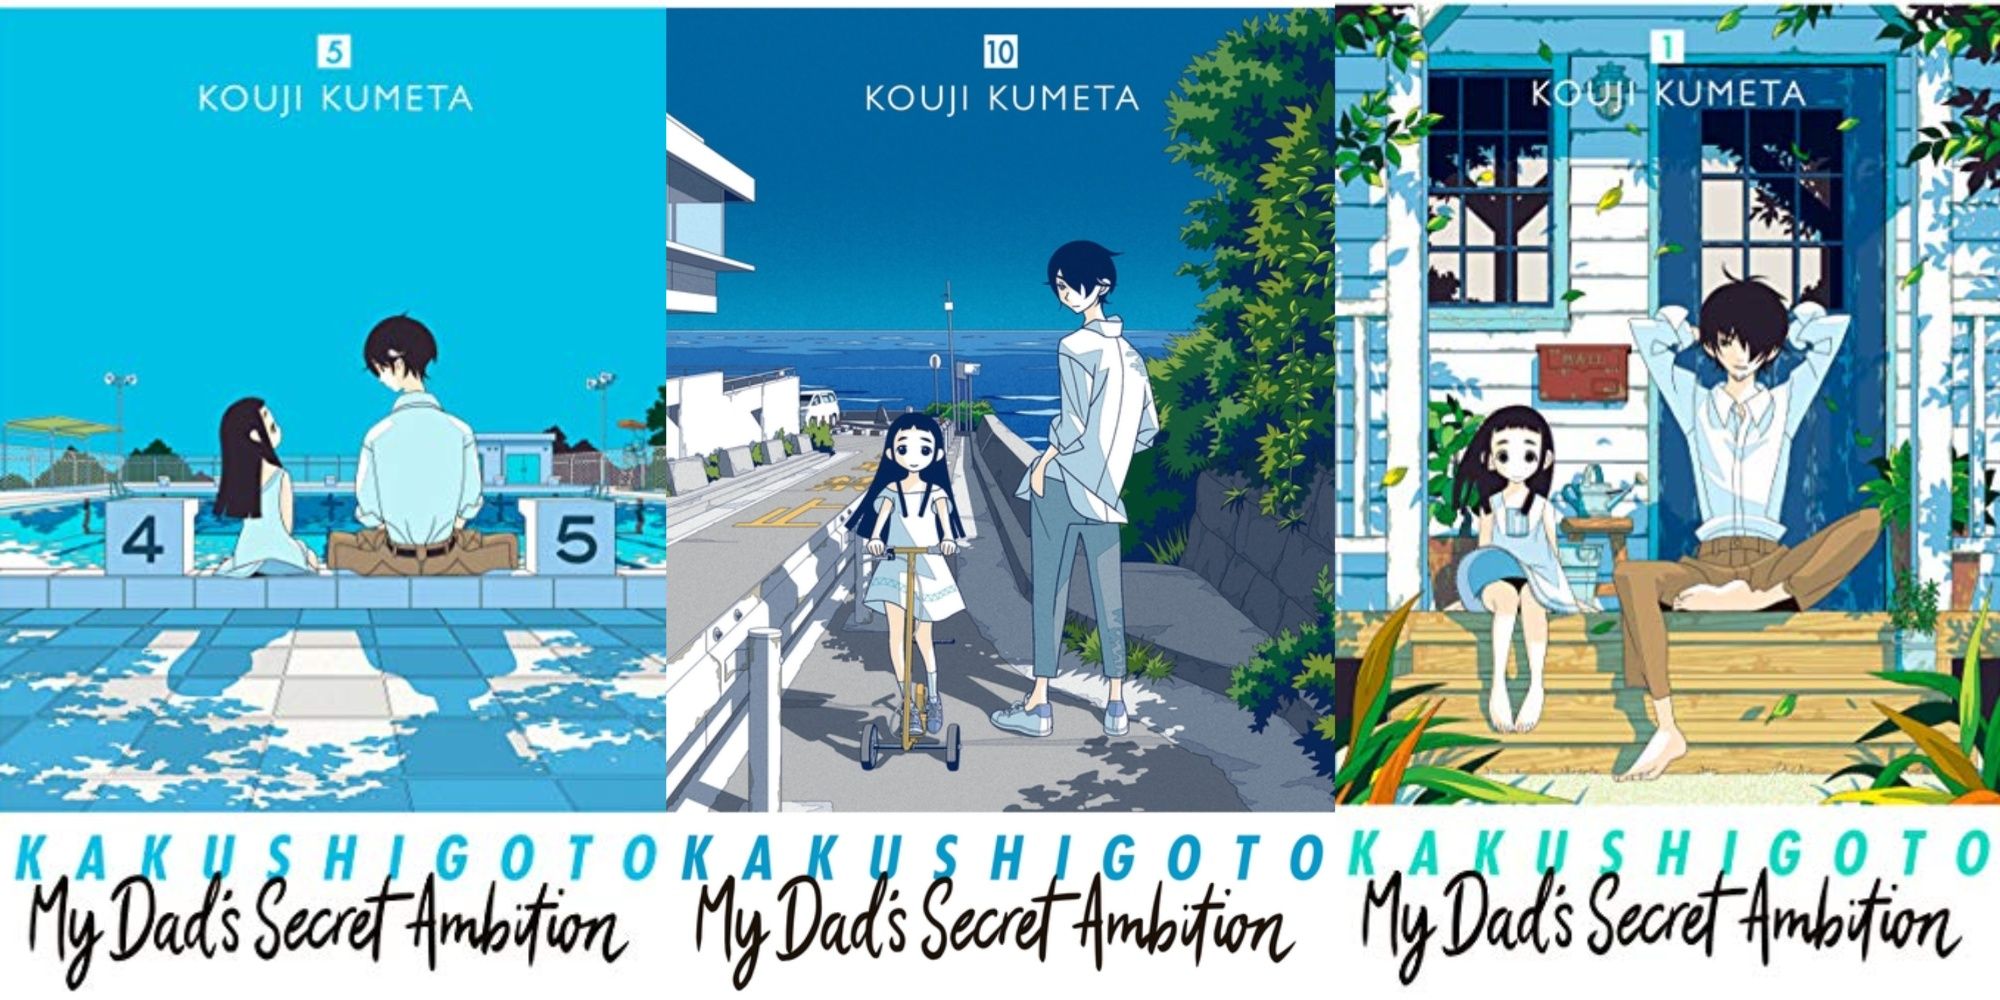 Kakushigoto: My Dad’s Secret Ambition